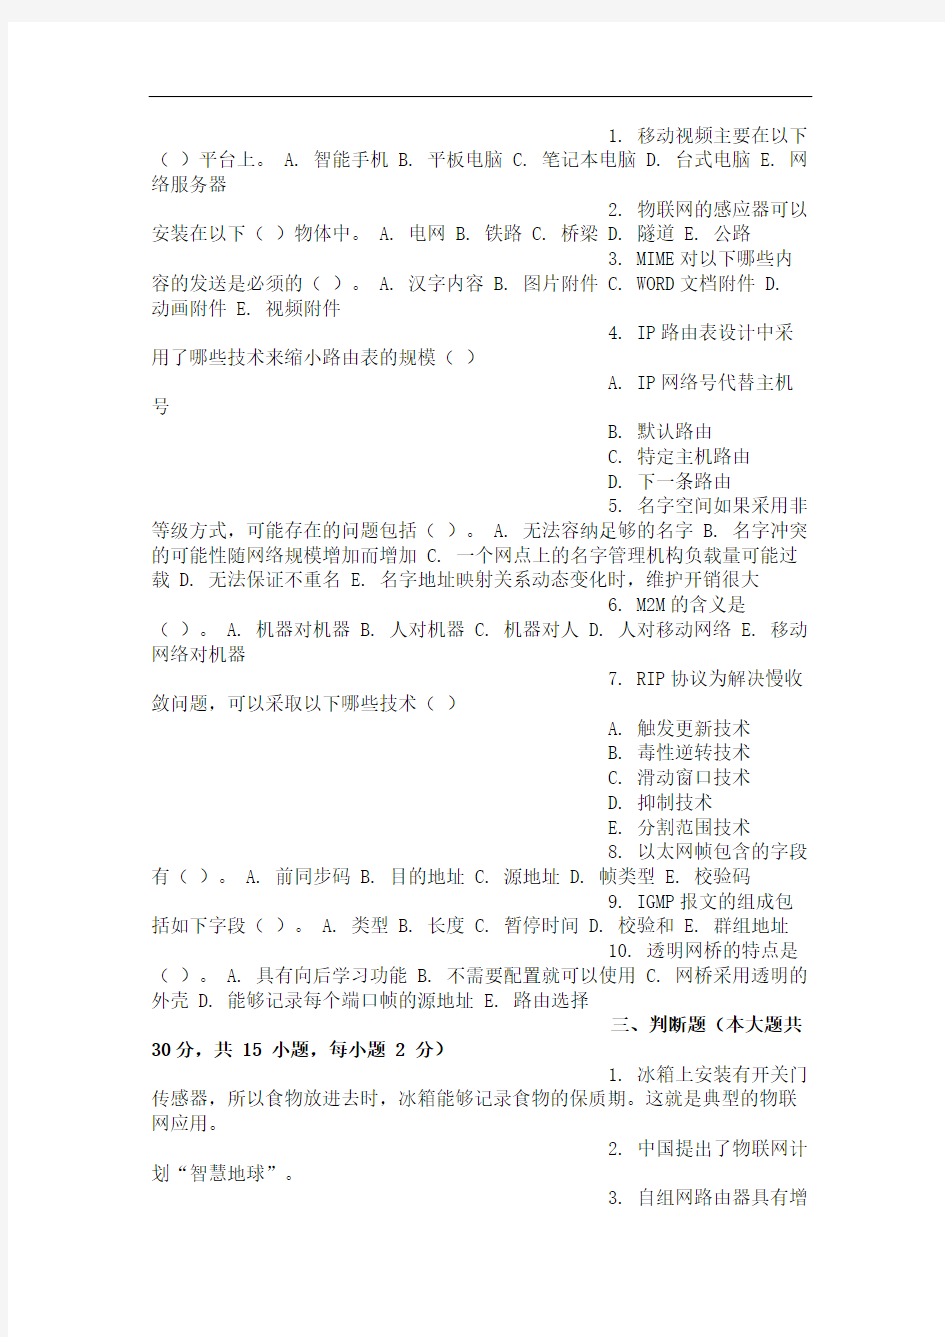 重庆大学网教作业答案-互联网及其应用(第1次)